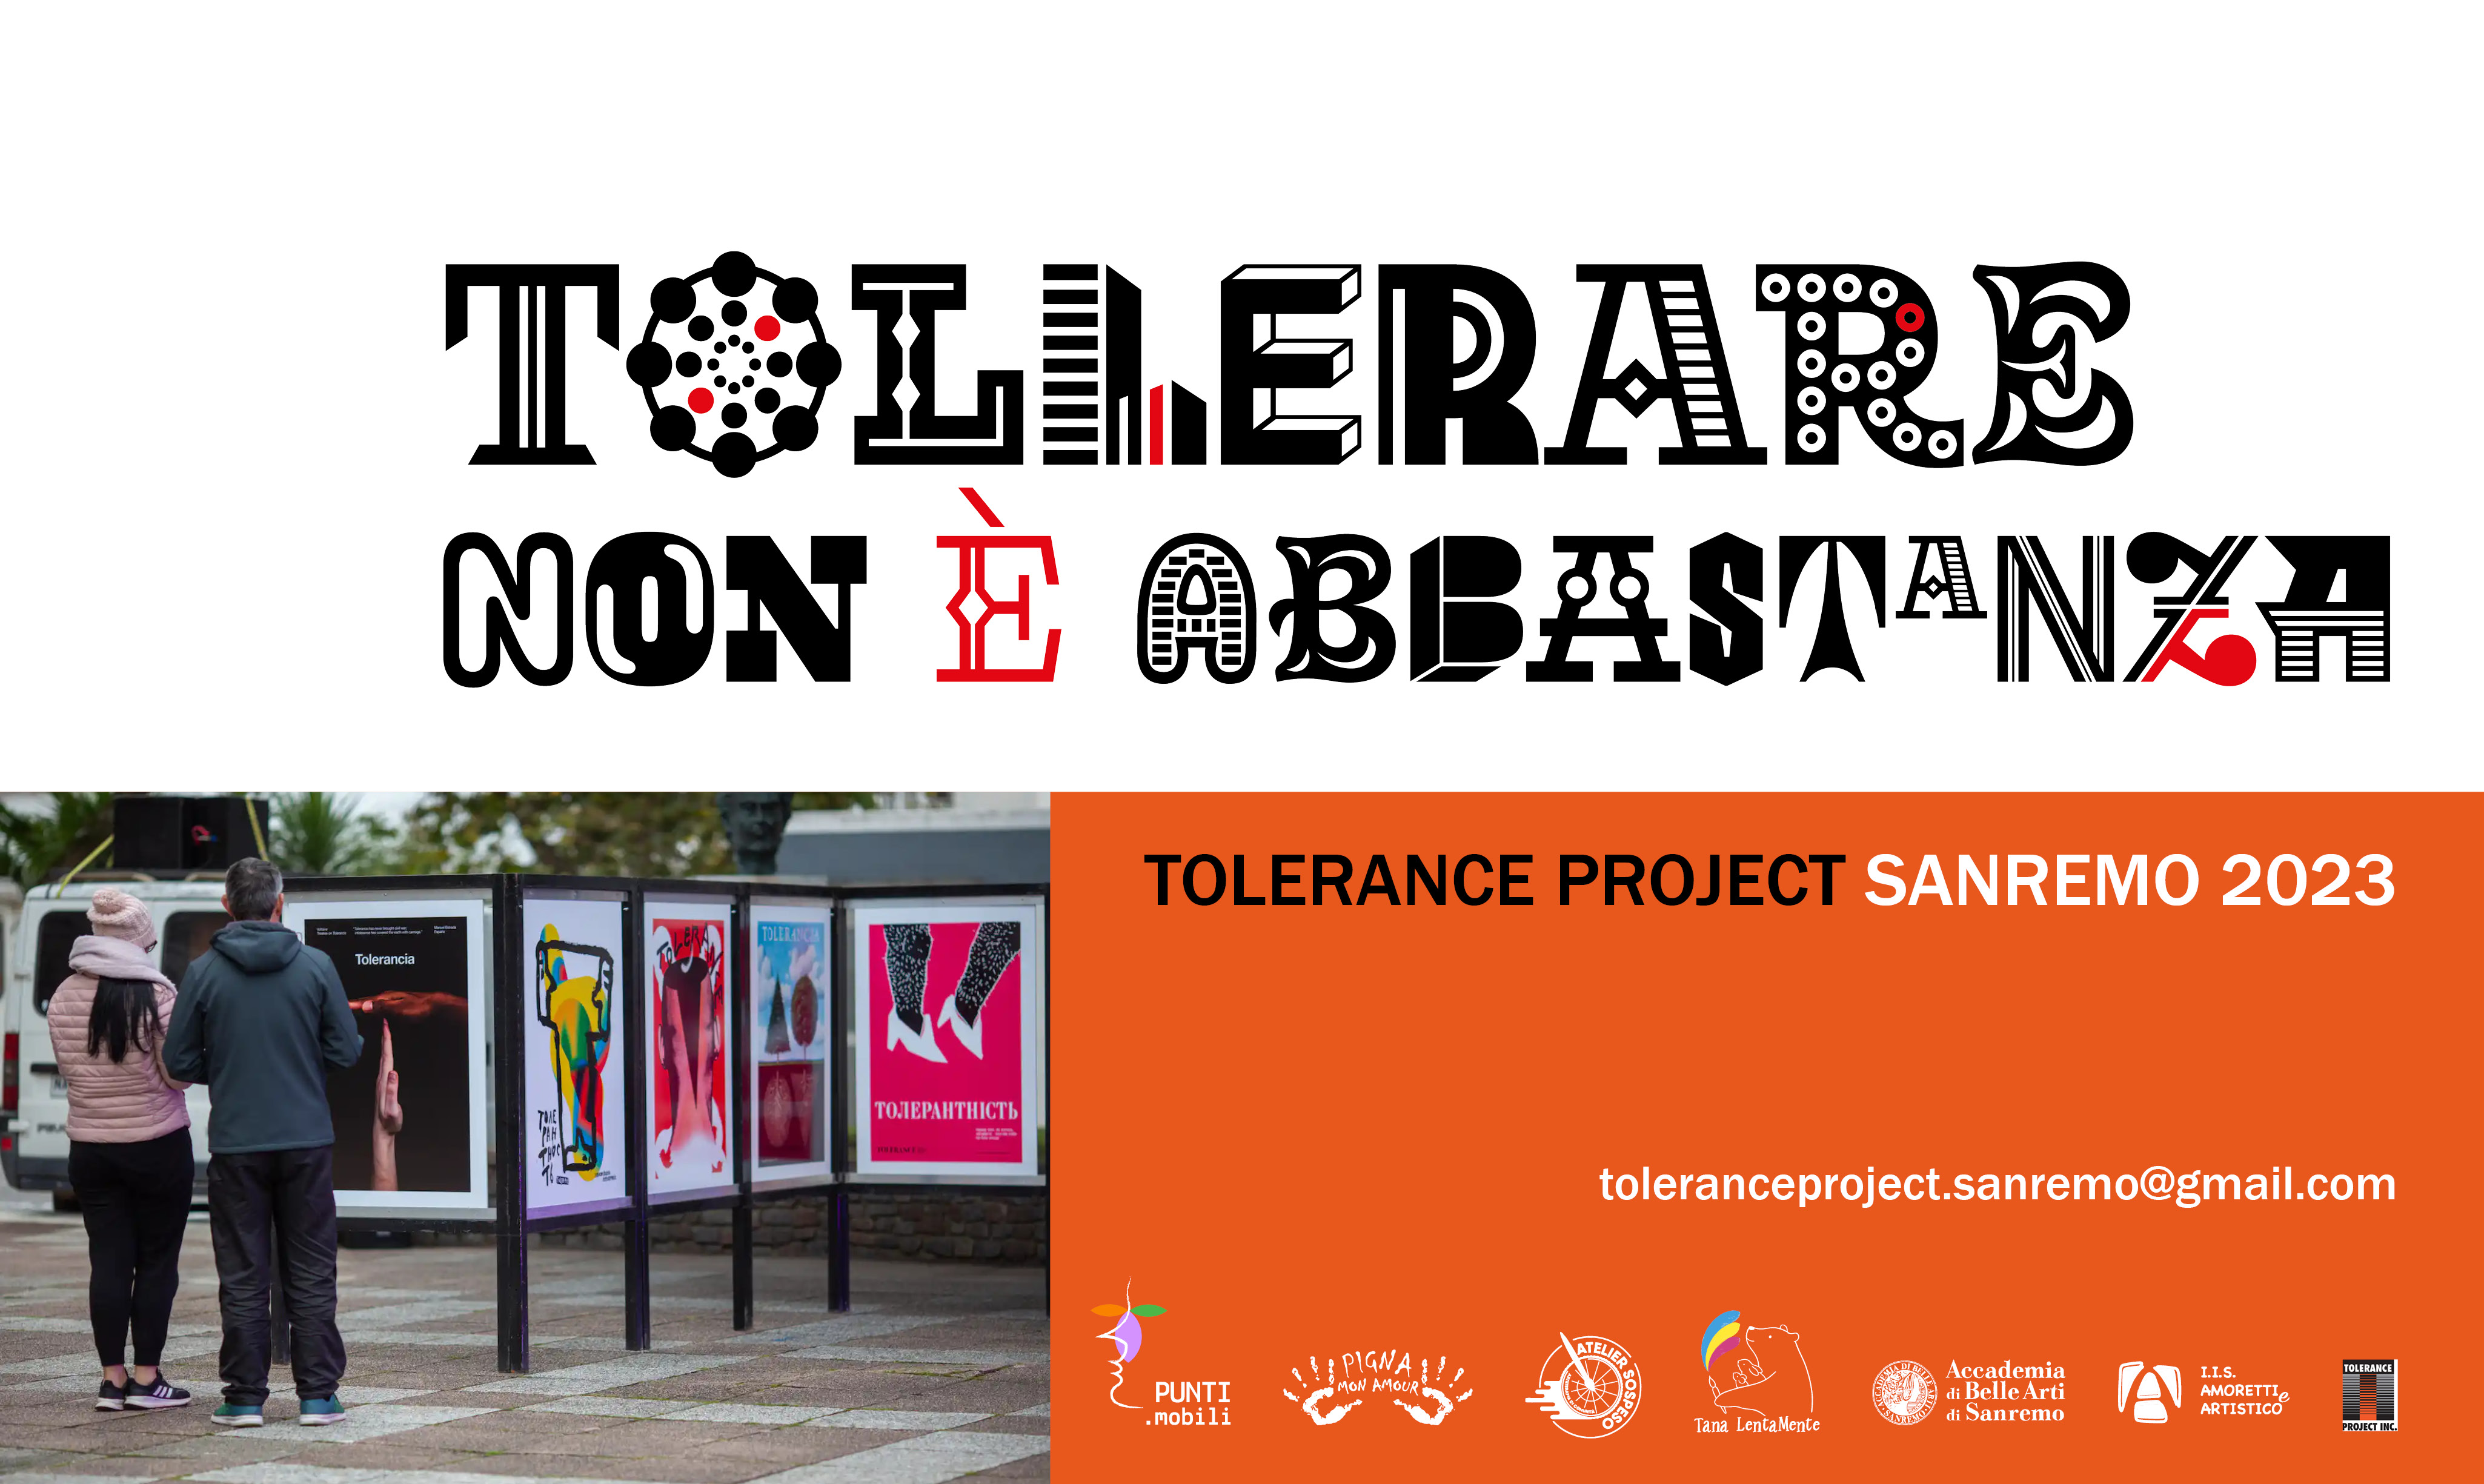 Tollerare non è abbastanza-
Tolerance Project a Sanremo